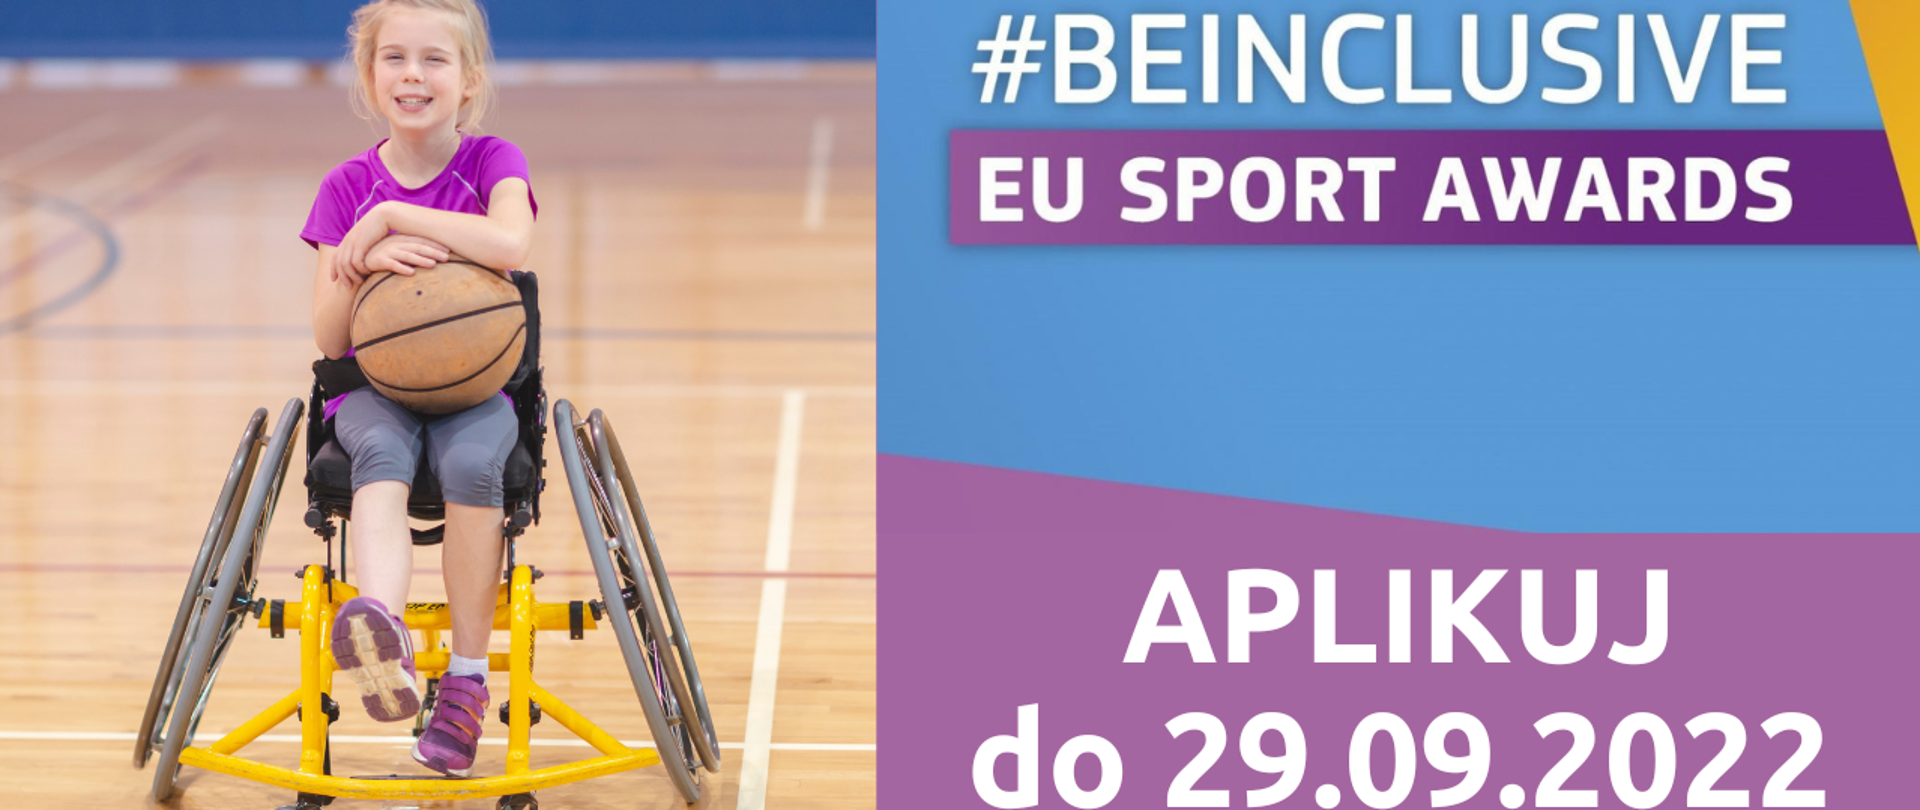 Trwa nabór do Konkursu #BeInclusive EU Sport Awards 2022. Dziewczynka siedząca na wózku, trzymająca w rękach piłkę do koszykówki. Napis #BeInclusive EU Sport Awards, aplikuj do 29.09.2022